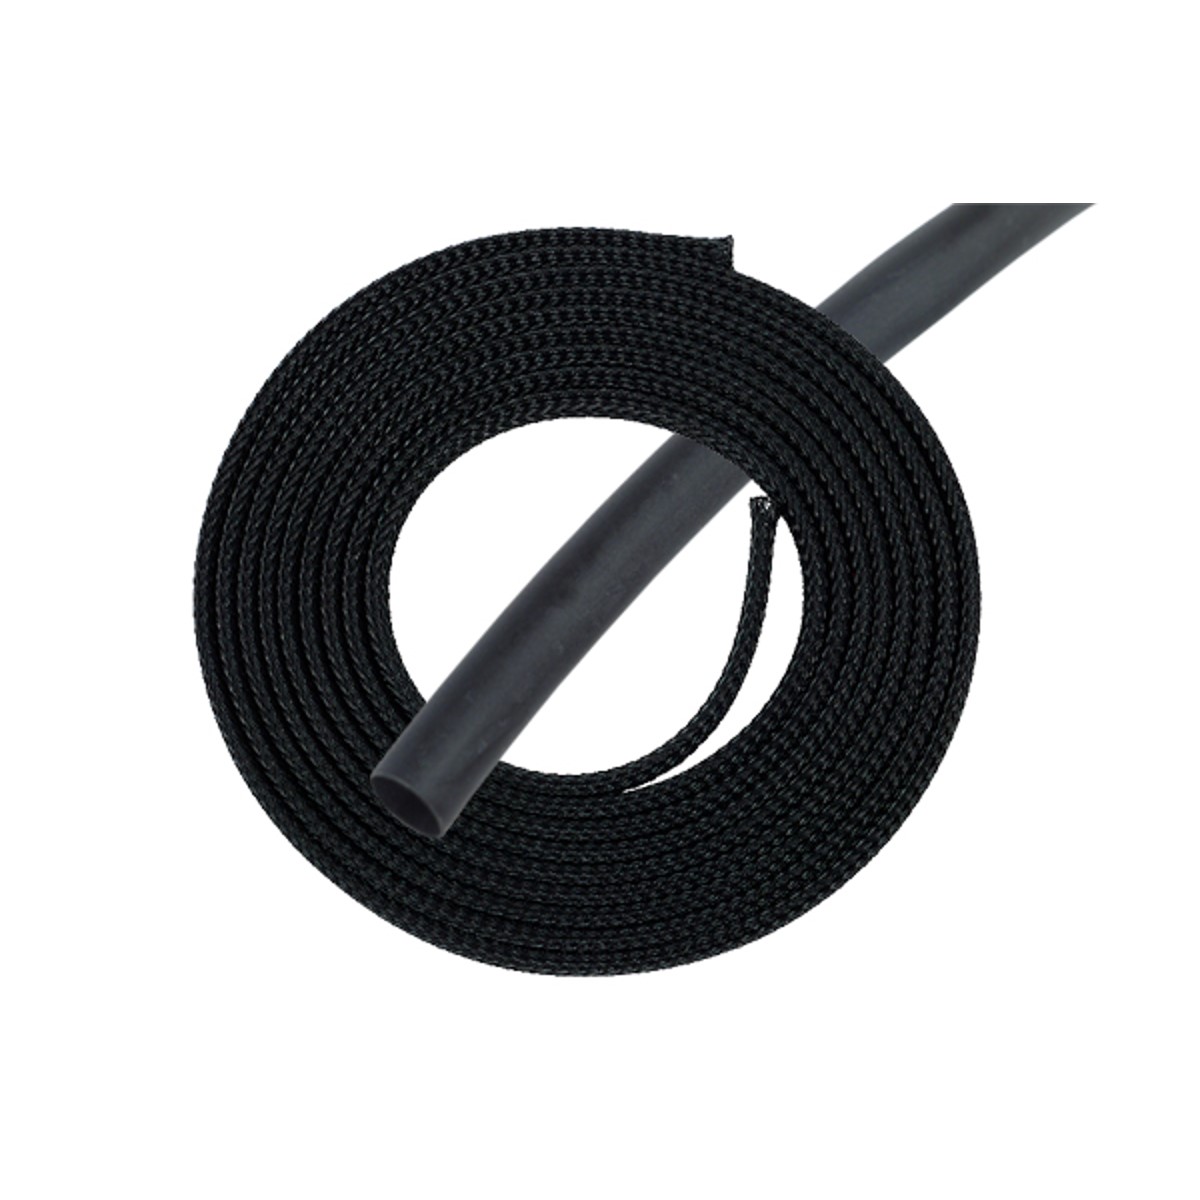 Phobya Simple Sleeve Kit 10mm (3/8") with Heat Shrink, 2 meter, Black - image 1 of 3